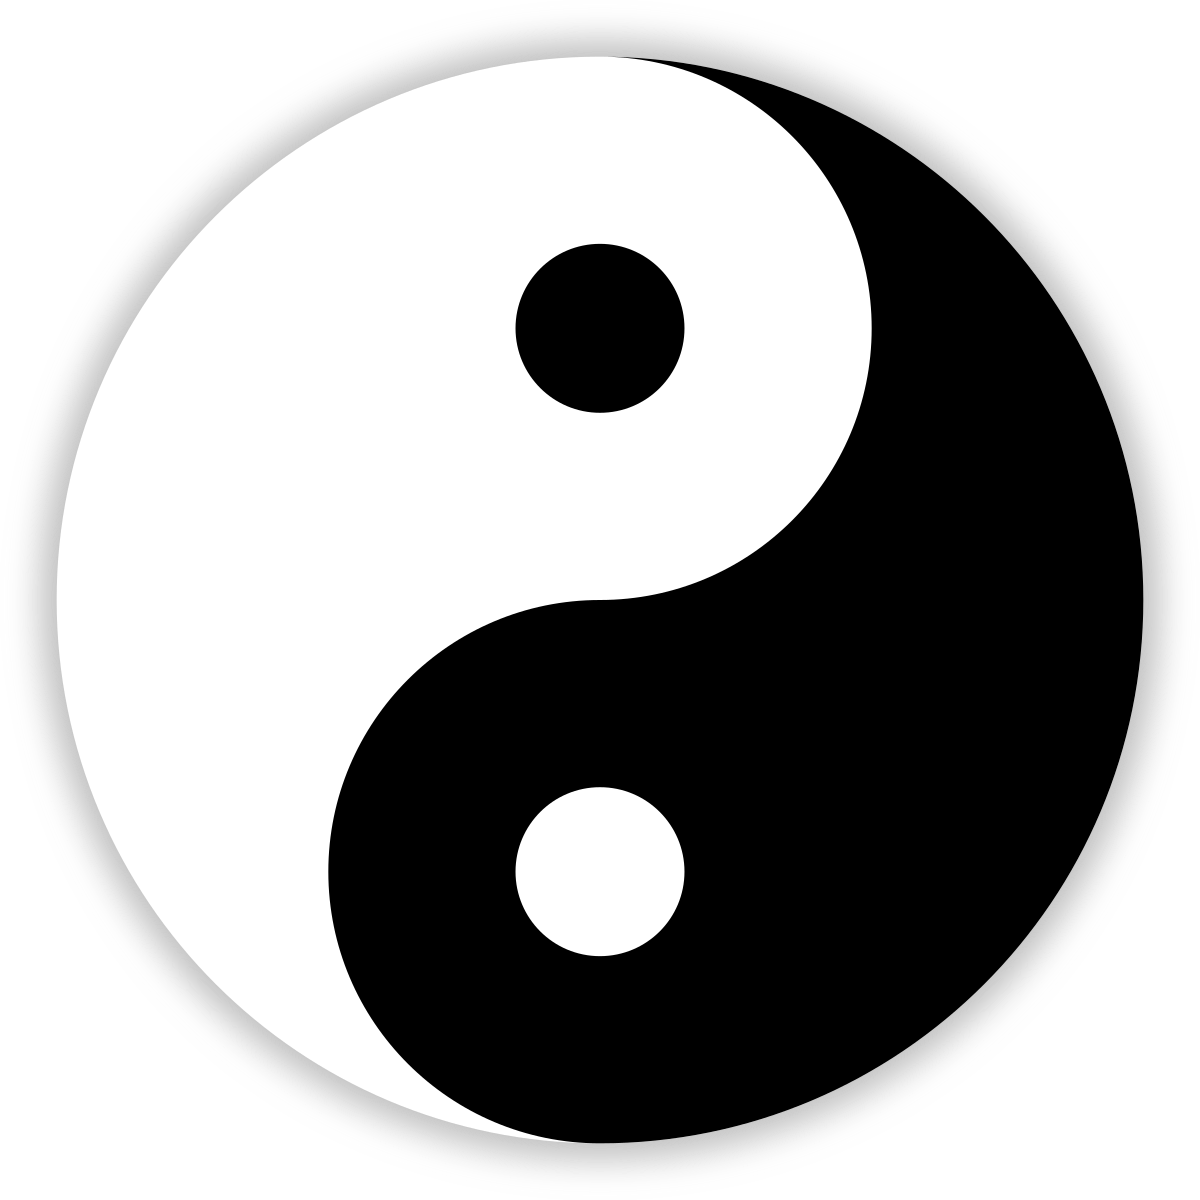 Yin-yang symbol.